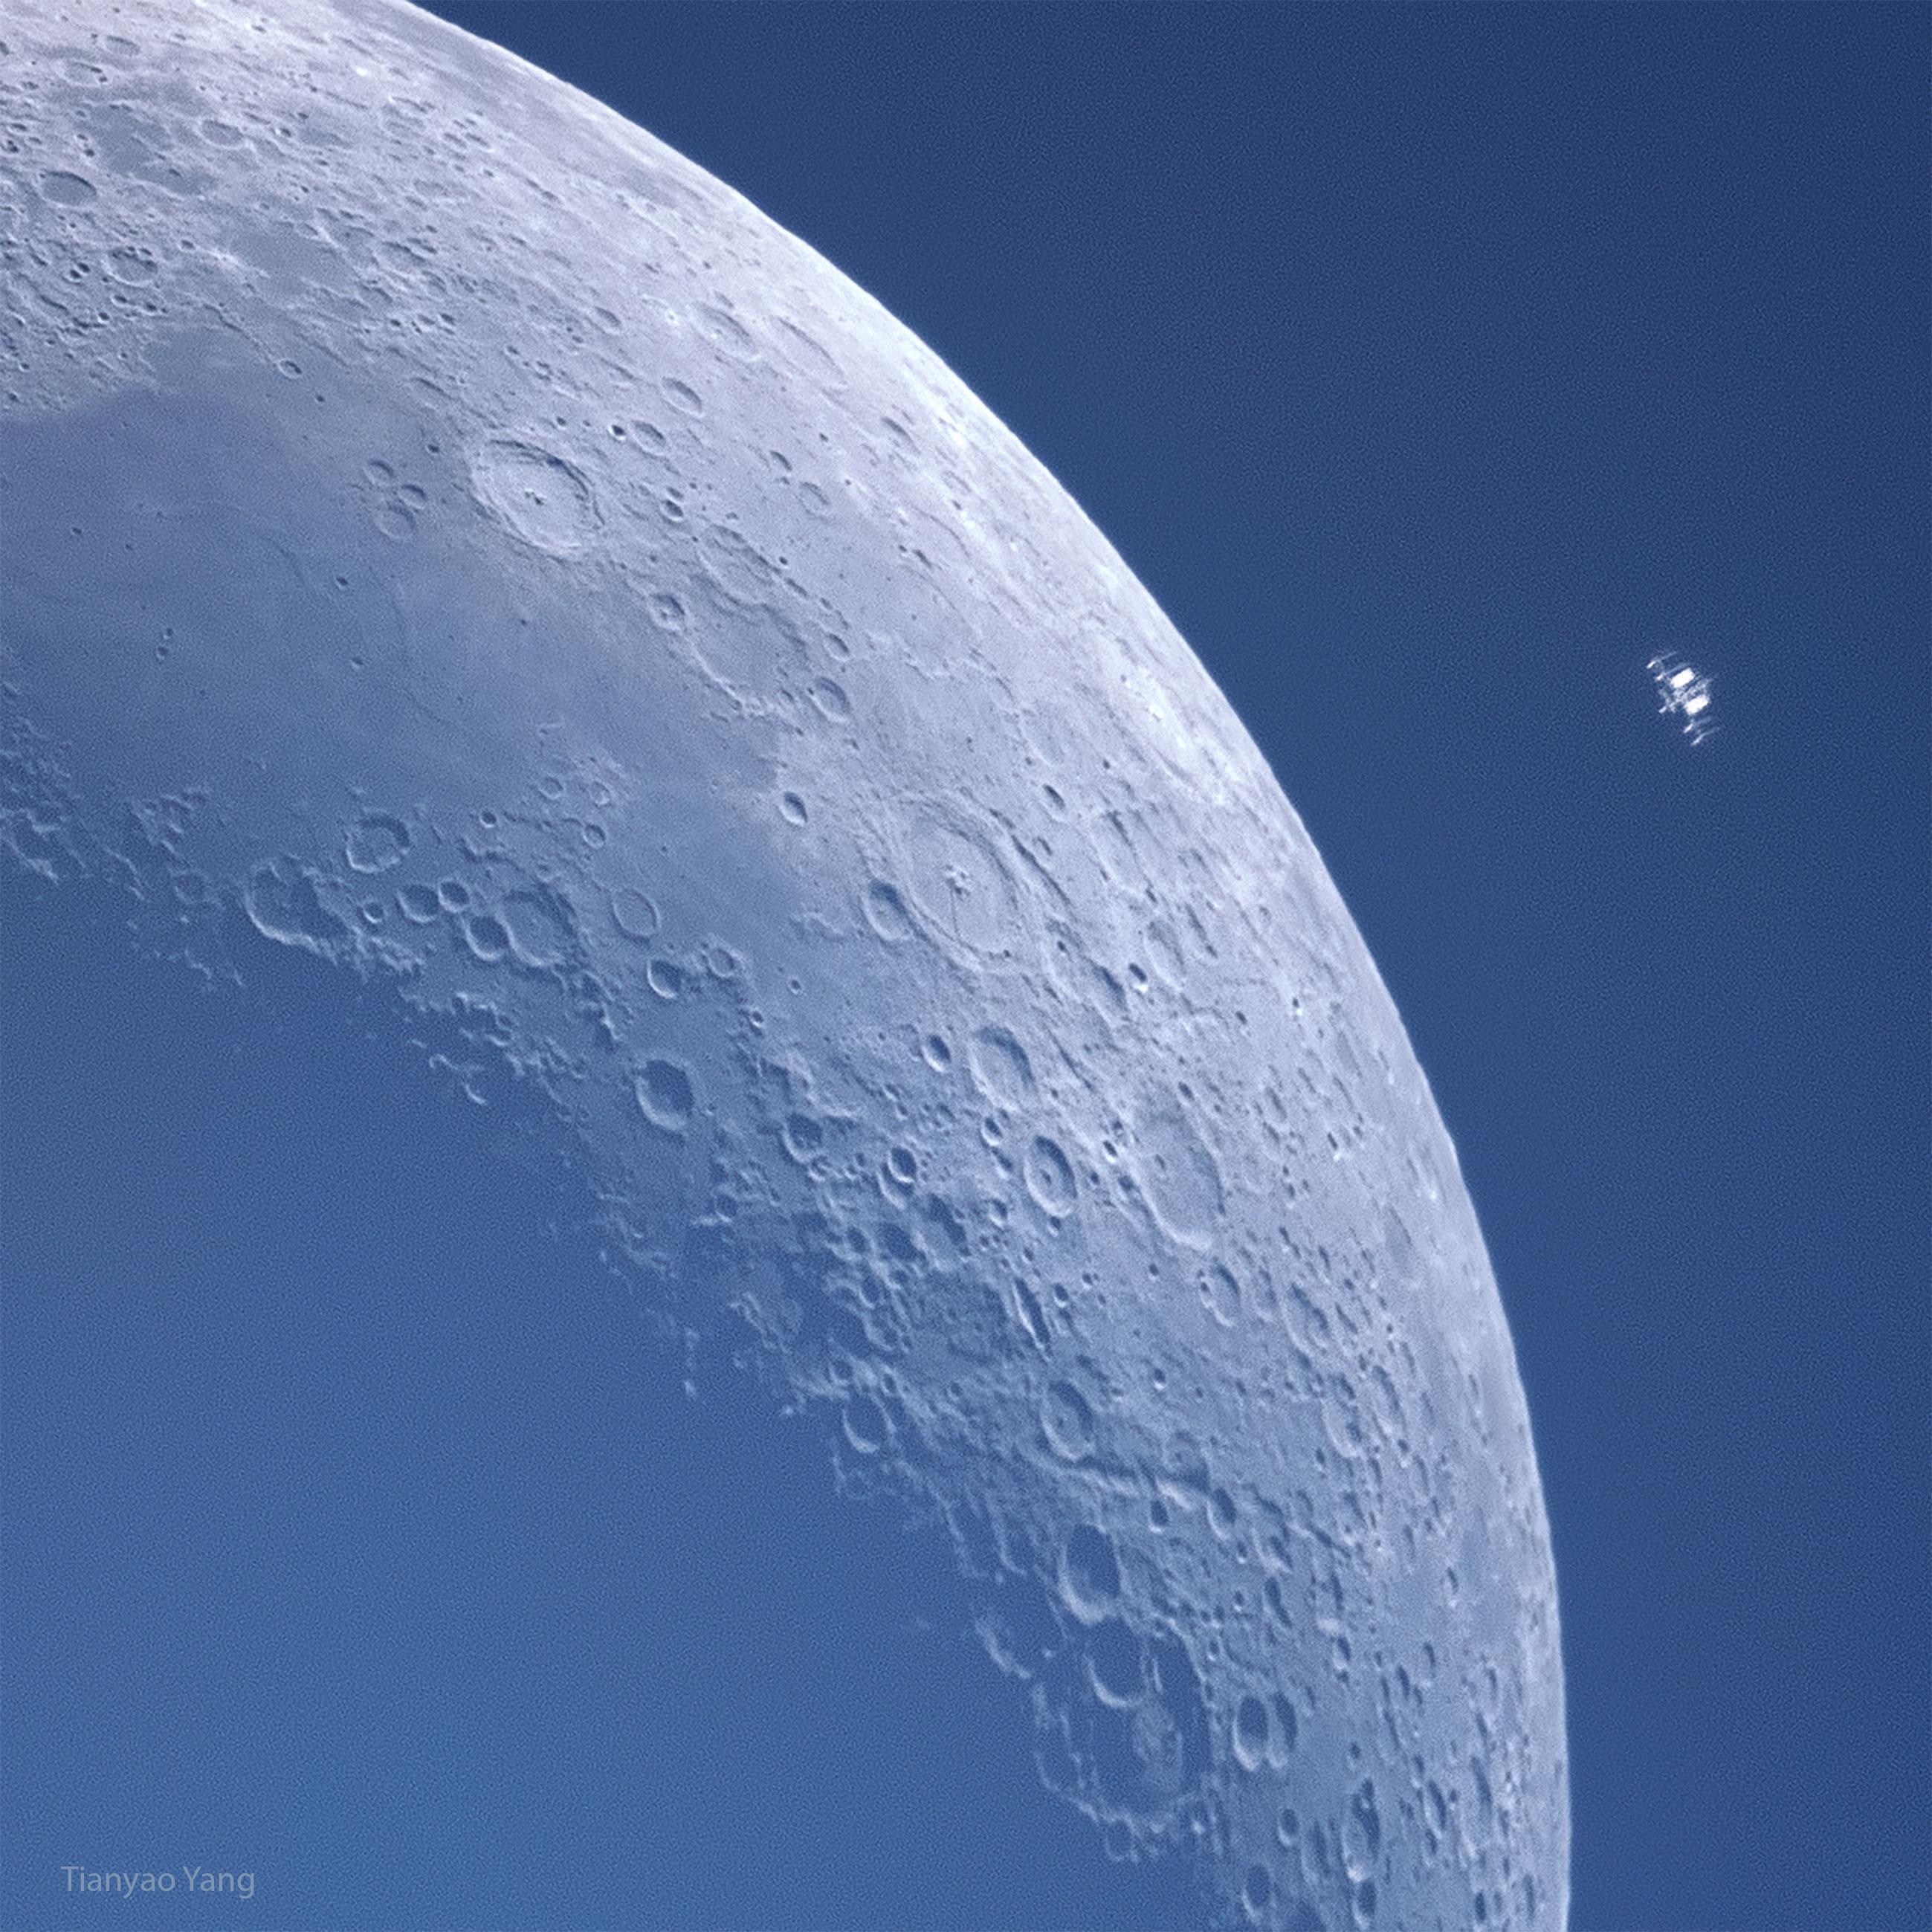 قمرٌ هلال على خلفيّةٍ زرقاء. تظهر الكثير من الفوّهات بتفاصيل عظيمة. يظهر إلى أعلى اليسار آلةٌ صغيرة من نوعٍ ما هي في الحقيقة محطّة الفضاء الدوليّة في مدارٍ حول الأرض أيضاً.